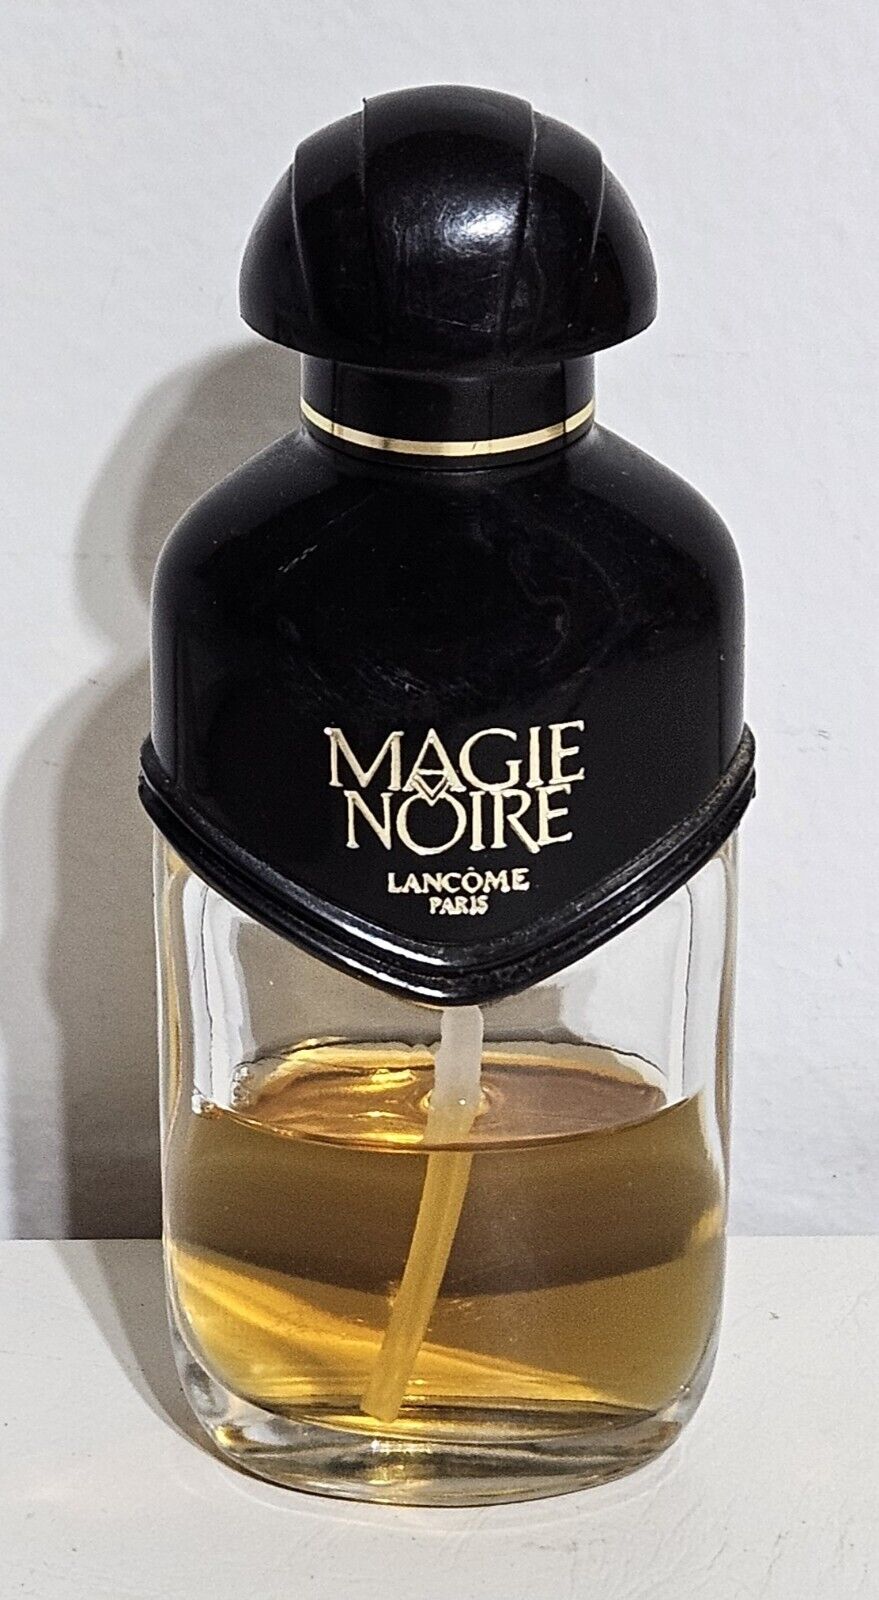 Vintage Magie Noire Lancome Paris Perfume 1 FL. Oz. (30 mL) - about 1/2 Full